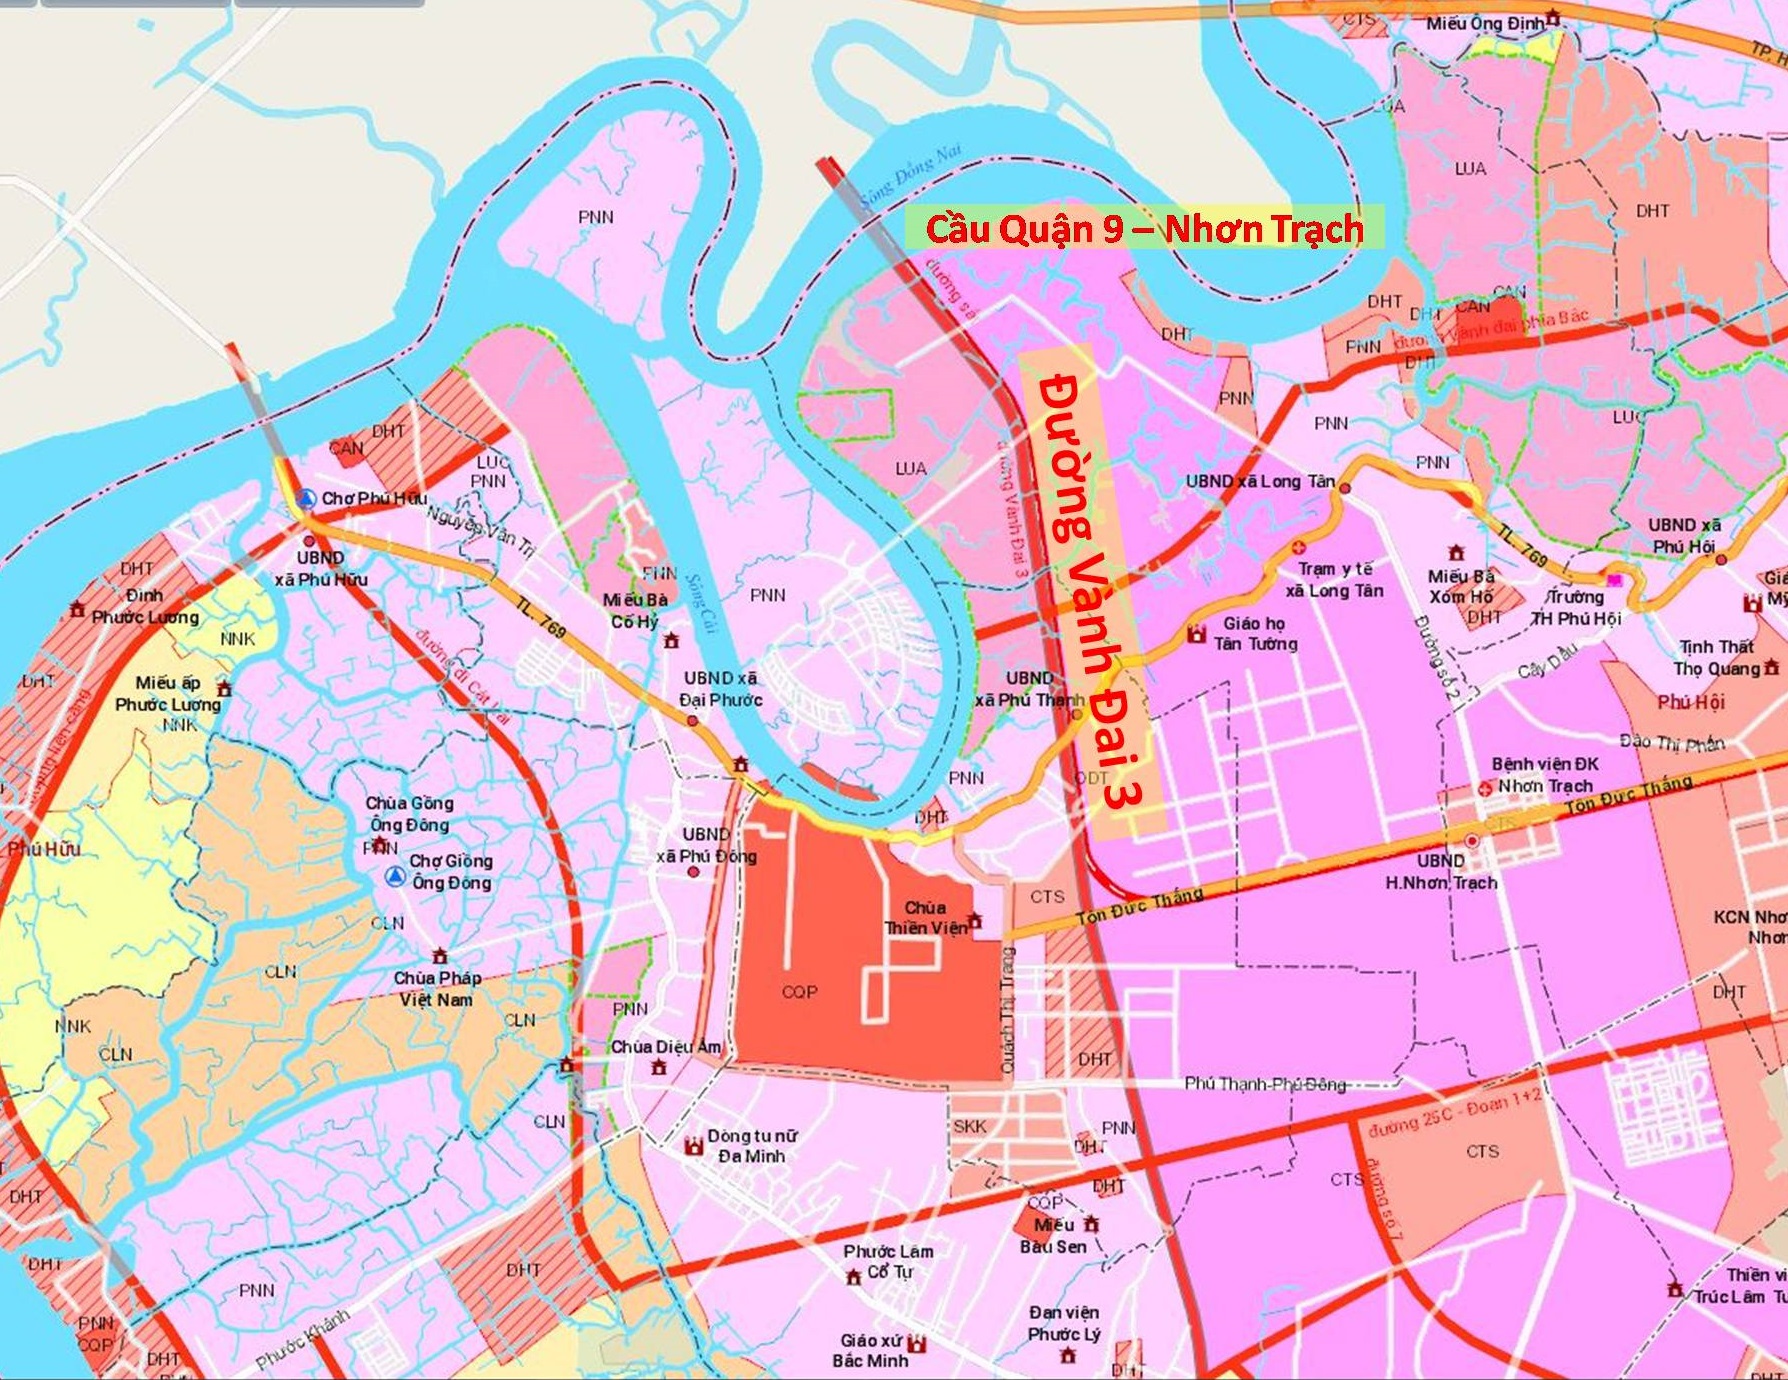 Đường Vành Đai 3 - Địa Ốc Thông Thái đang làm thay đổi diện mạo của thành phố Hồ Chí Minh. Chỉ trong vài năm qua, khu vực này đã trở thành một trong những địa điểm phát triển bất động sản đáng chú ý nhất. Xem hình ảnh để khám phá lý do tại sao.